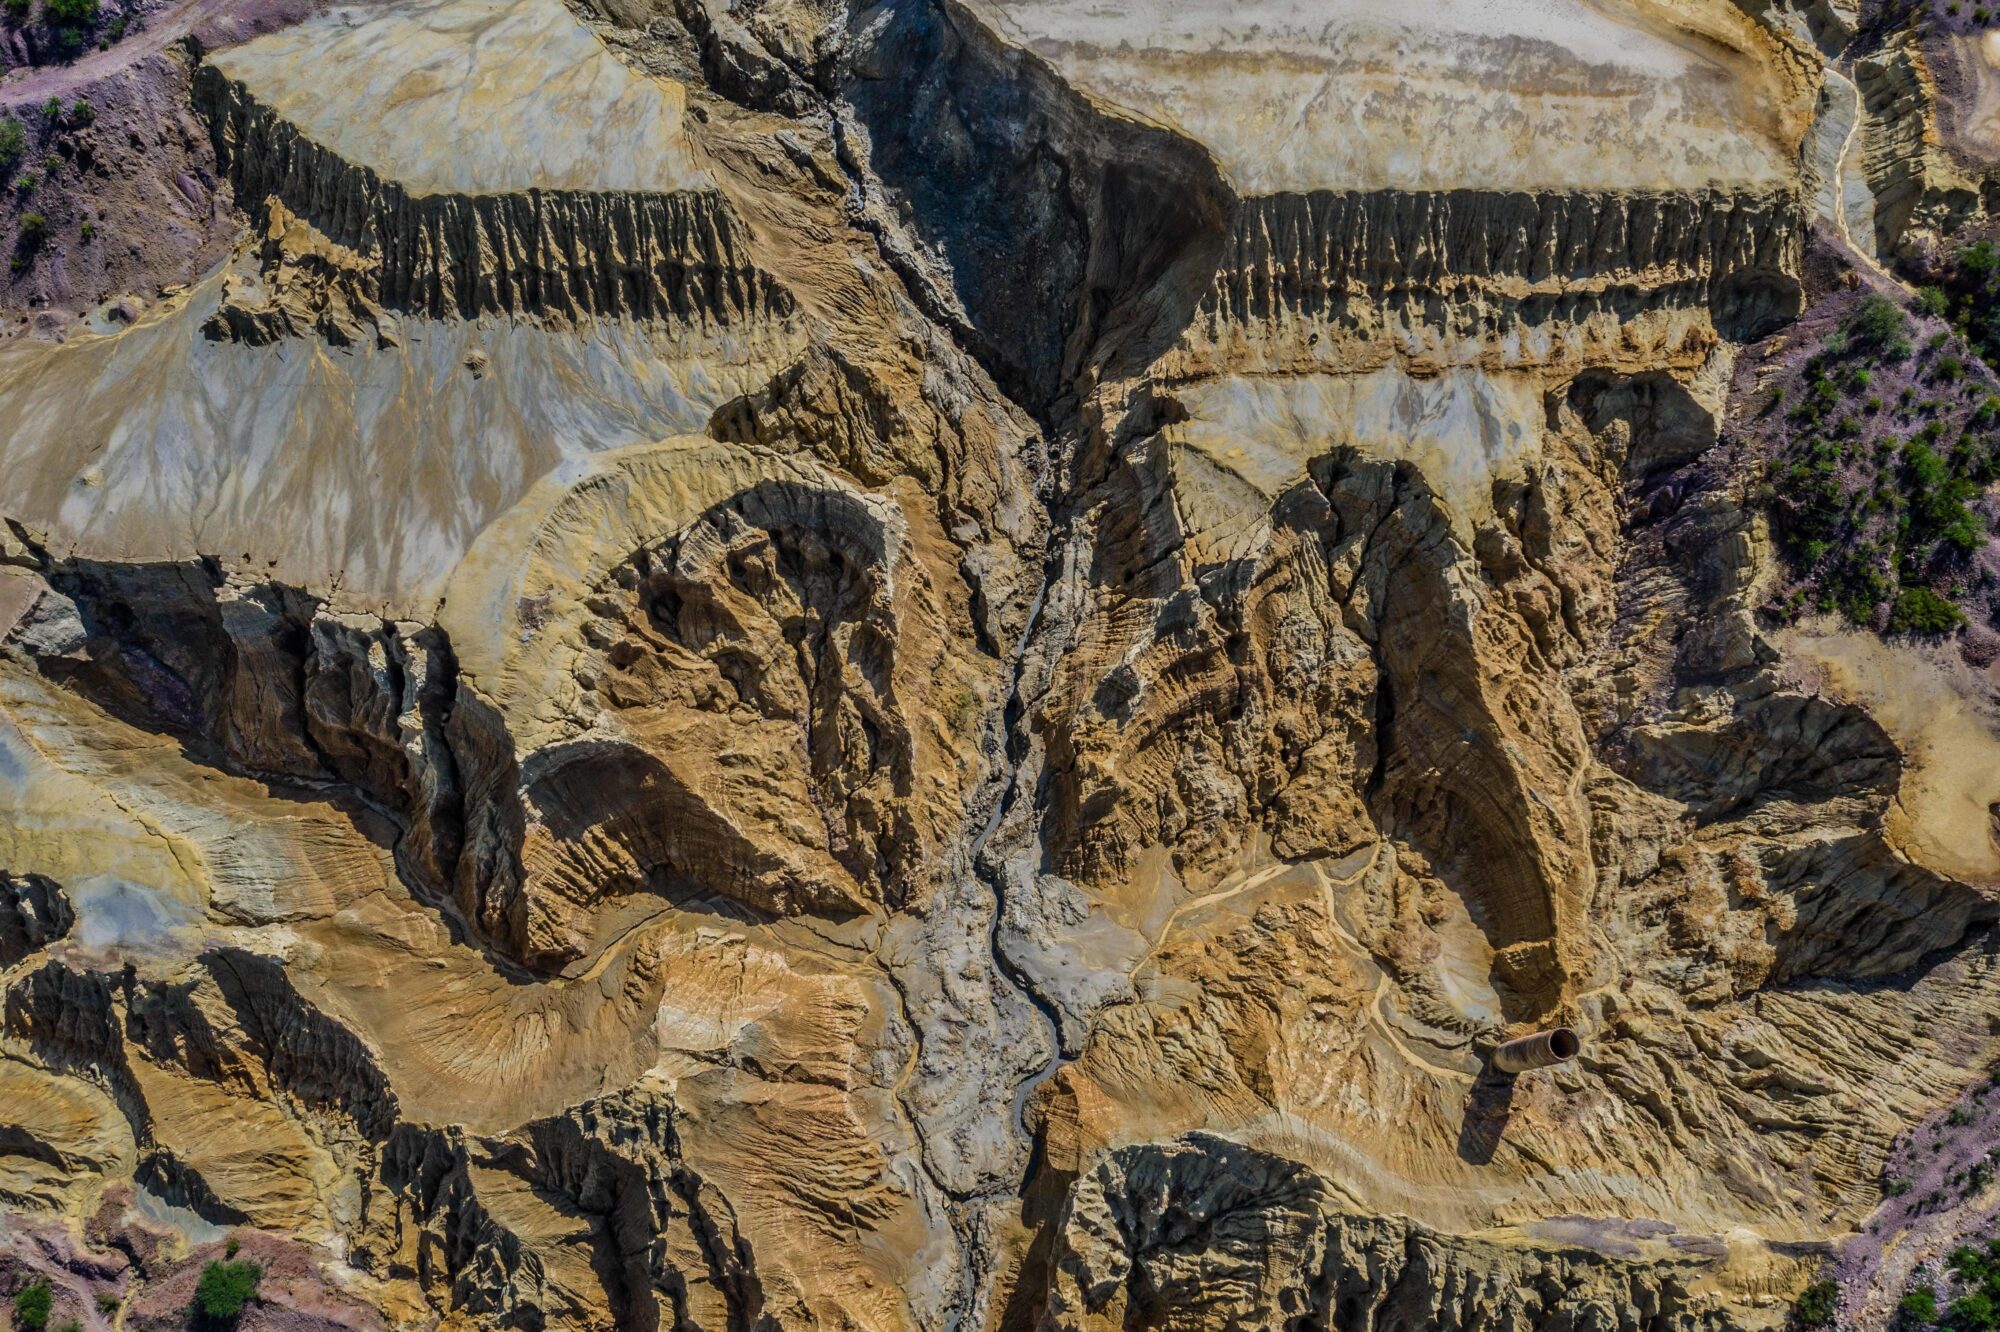 <p><i><span style="font-weight: 400;">Aérea de antigua mina de cobre con restos de roca deteriorada en el estado de Sonora, México (Imagen: Luis Gutiérrez / Alamy) </span></i></p>